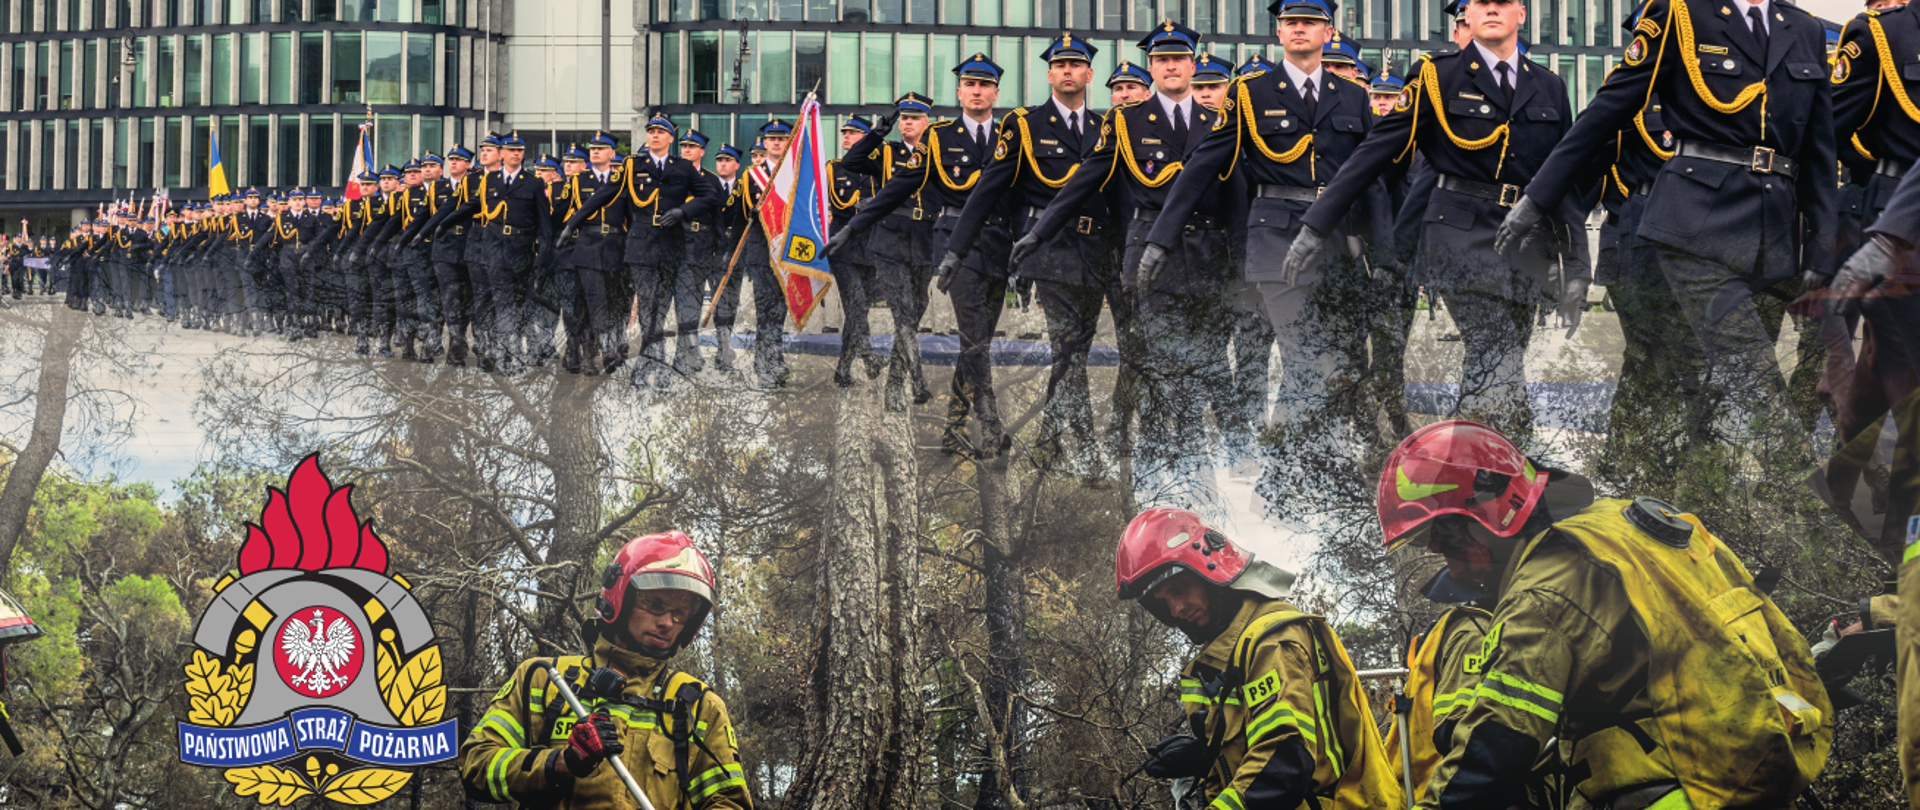 strażacy gaszący pożar lasu, nad nimi defilada strażaków